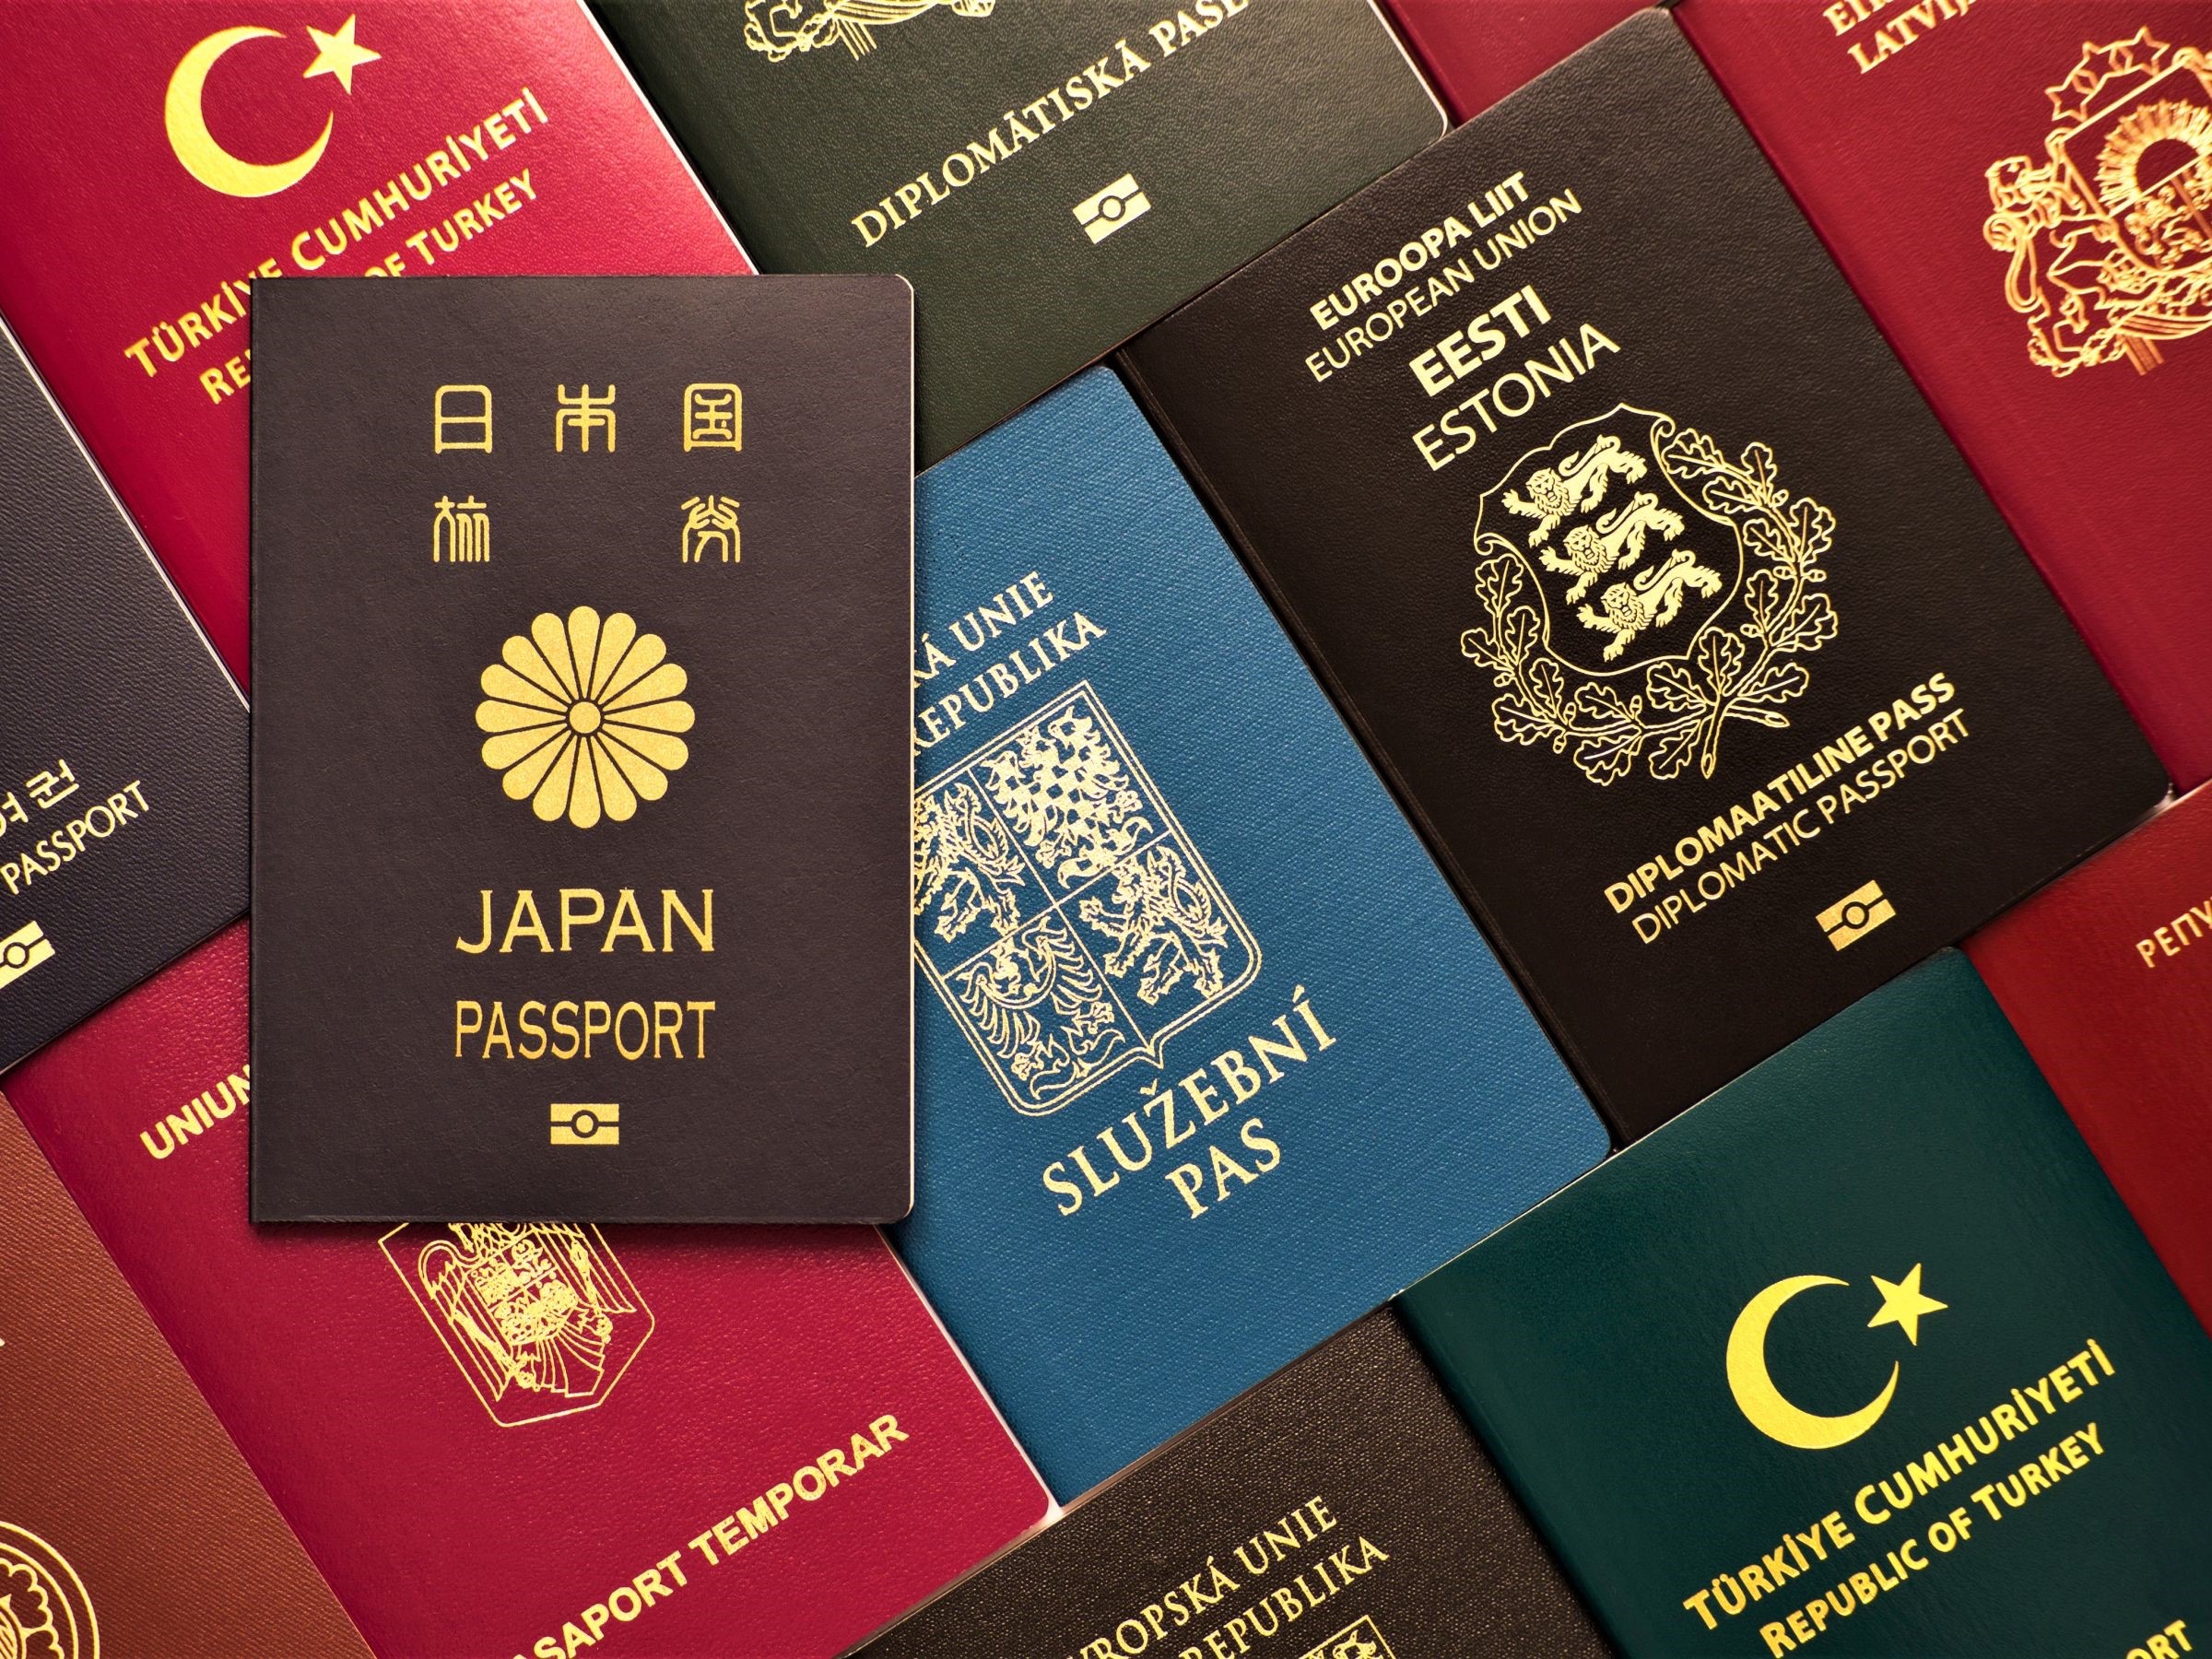 Gia hạn cư trú thêm 30 ngày cho người nước ngoài cư trú hợp pháp tại Đài Loan trên 180 ngày lần thứ 20. (Nguồn ảnh: Sở Di dân)